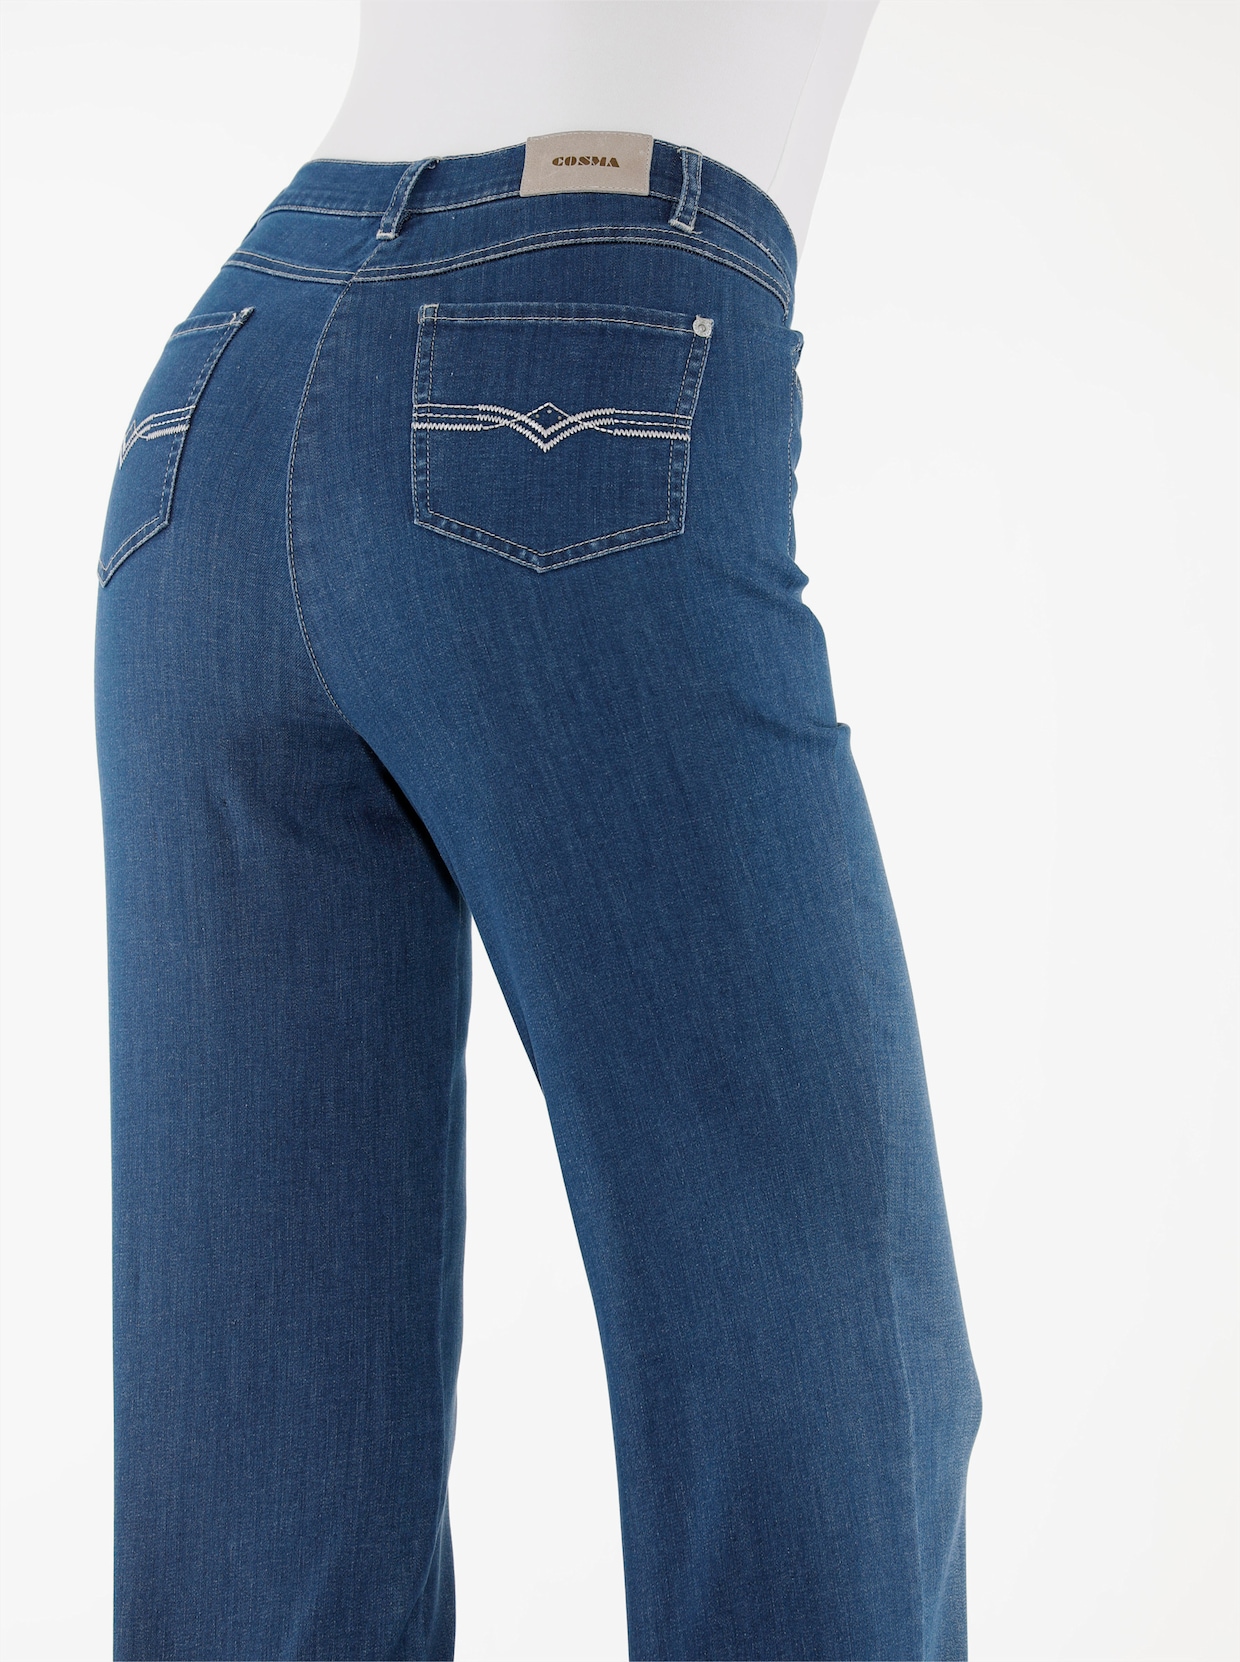 Cosma Jeans - blue-stonewashed